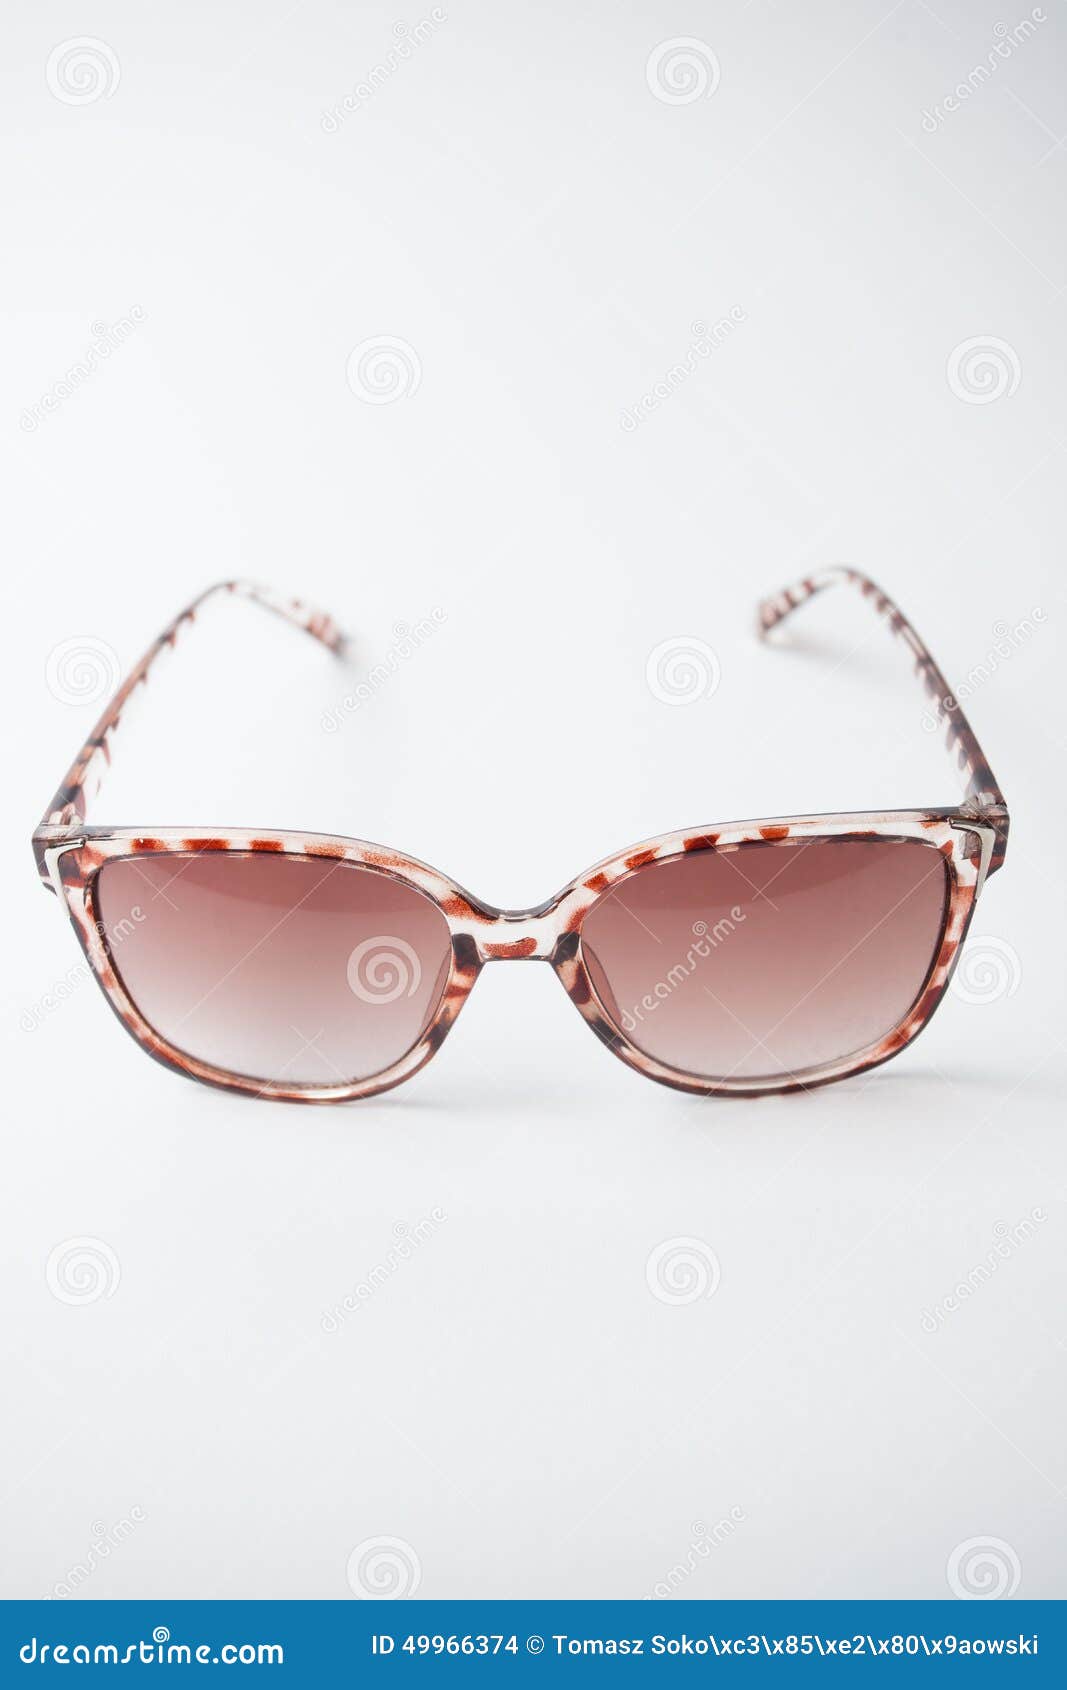 Weibliche Weinlesesonnenbrille. Ein Paar Braun, oldschool Sonnenbrille